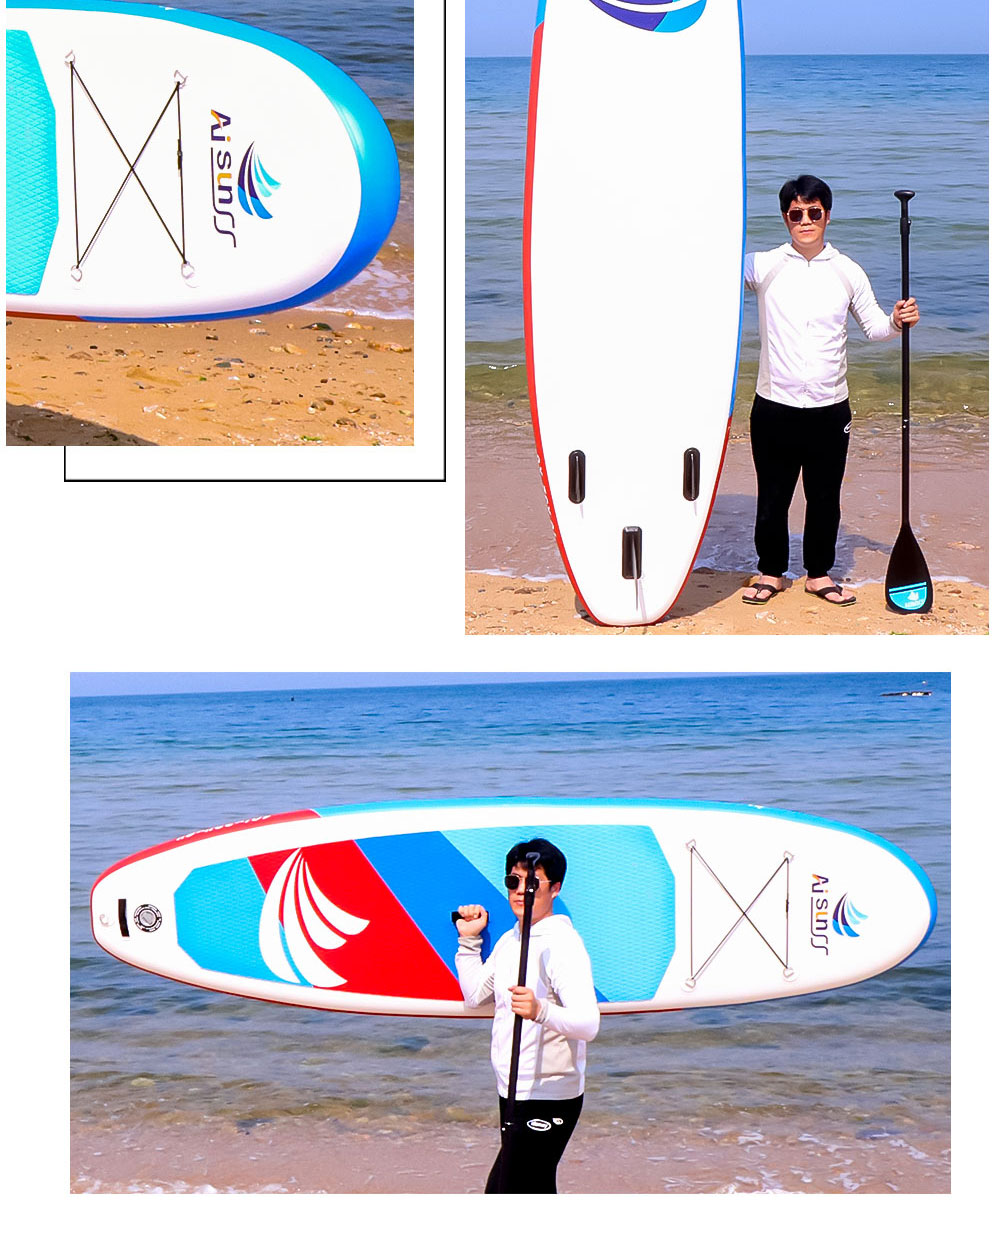 充气SUP冲浪板(图8)